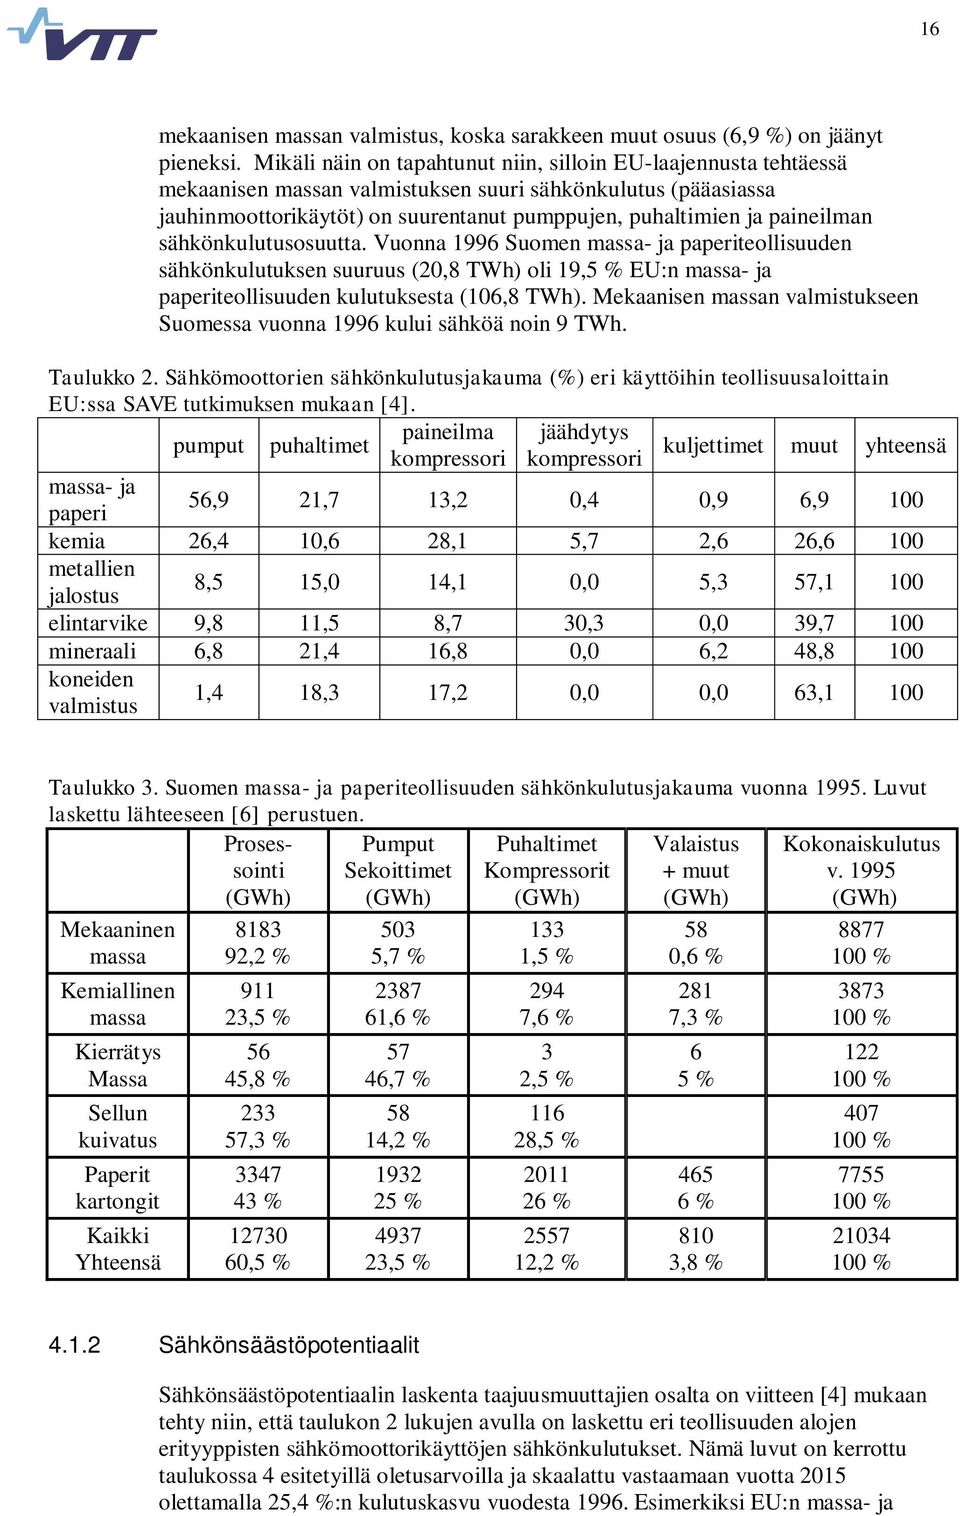 paineilman sähkönkulutusosuutta. Vuonna 1996 Suomen massa- ja paperiteollisuuden sähkönkulutuksen suuruus (20,8 TWh) oli 19,5 % EU:n massa- ja paperiteollisuuden kulutuksesta (106,8 TWh).